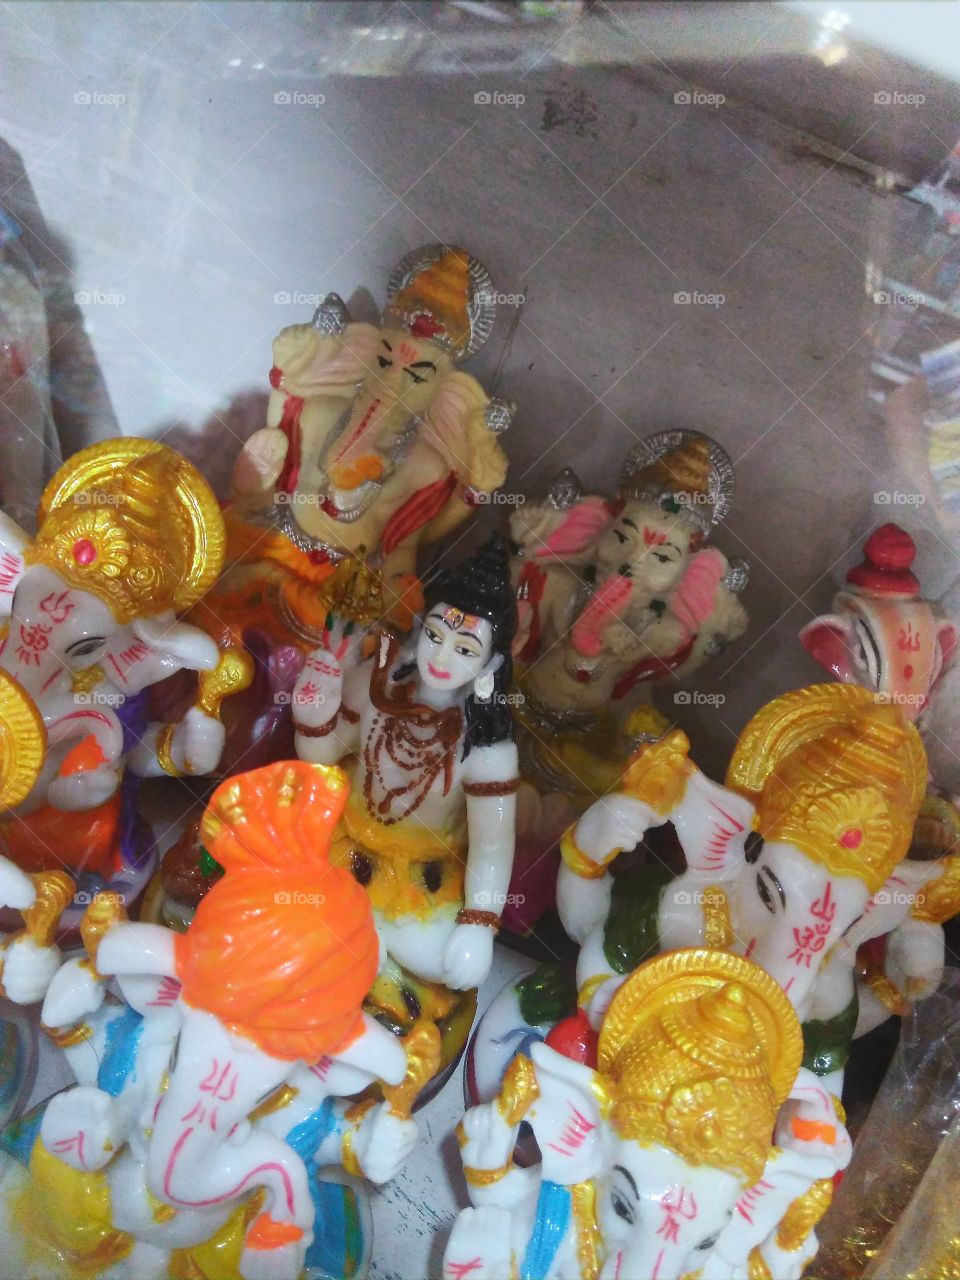 Lord Shivas beautiful idol